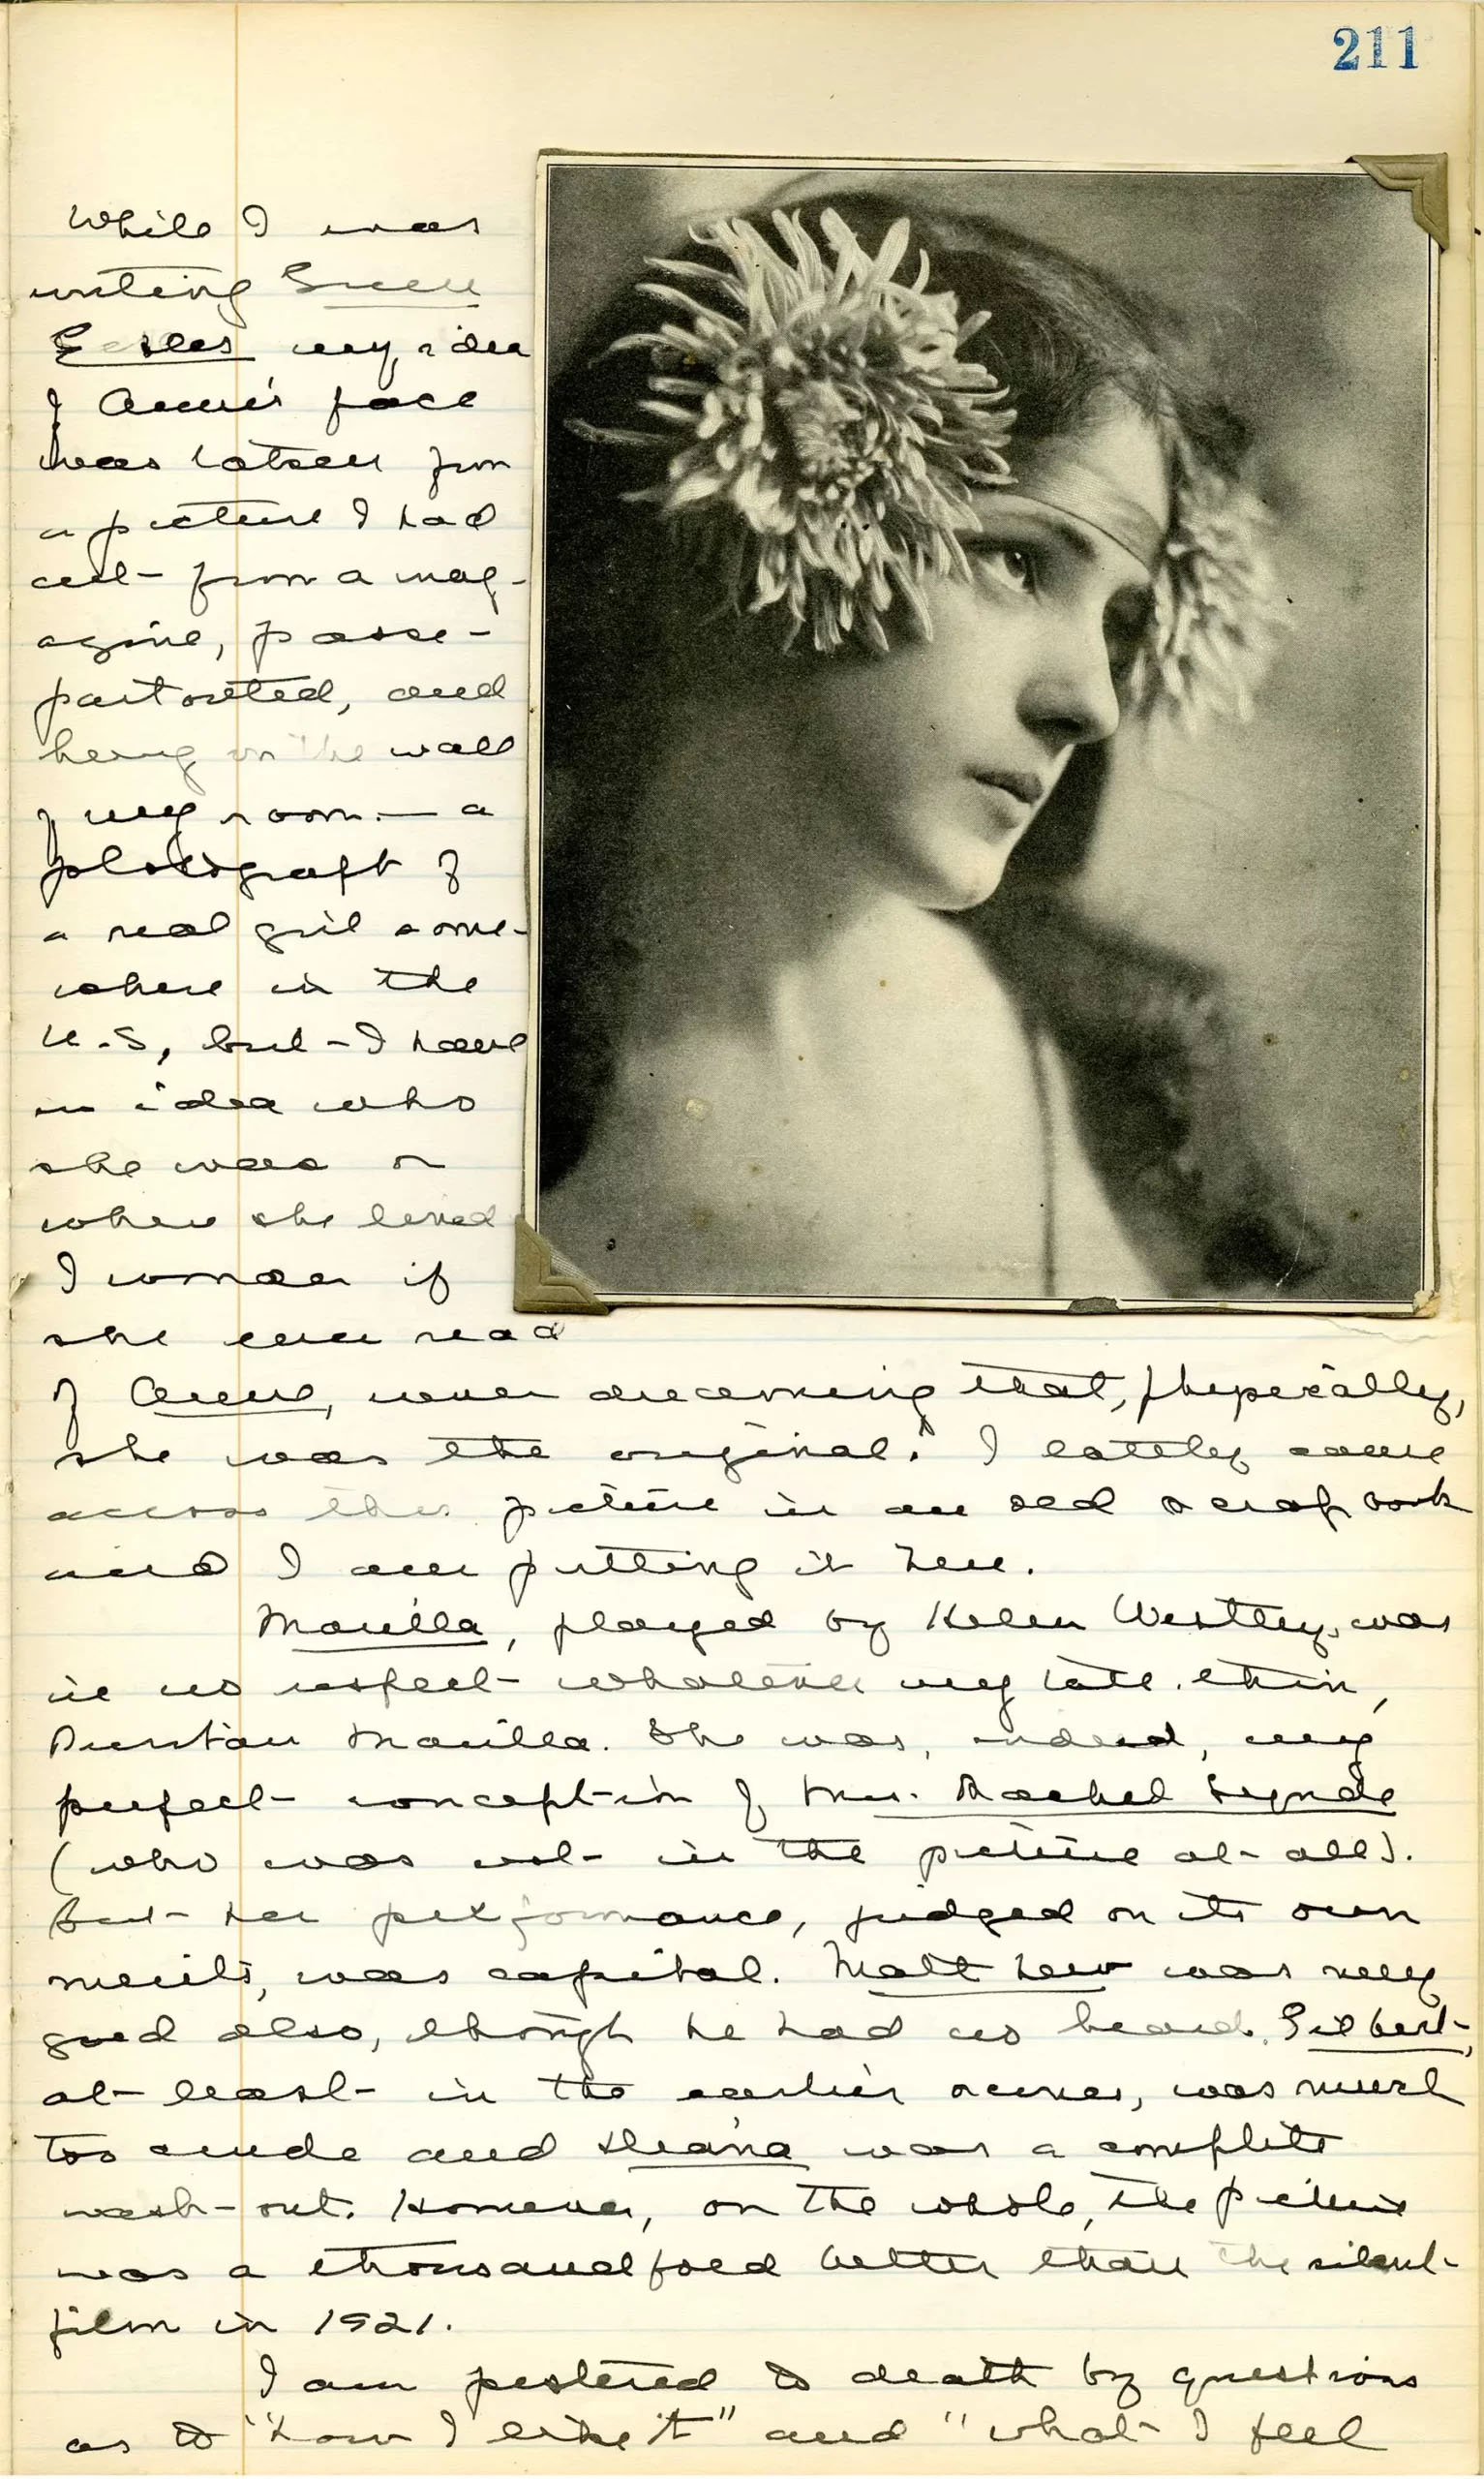 Une page du journal de Montgomery datée du 9 novembre 1934 avec une photo d’Evelyn Nesbit.